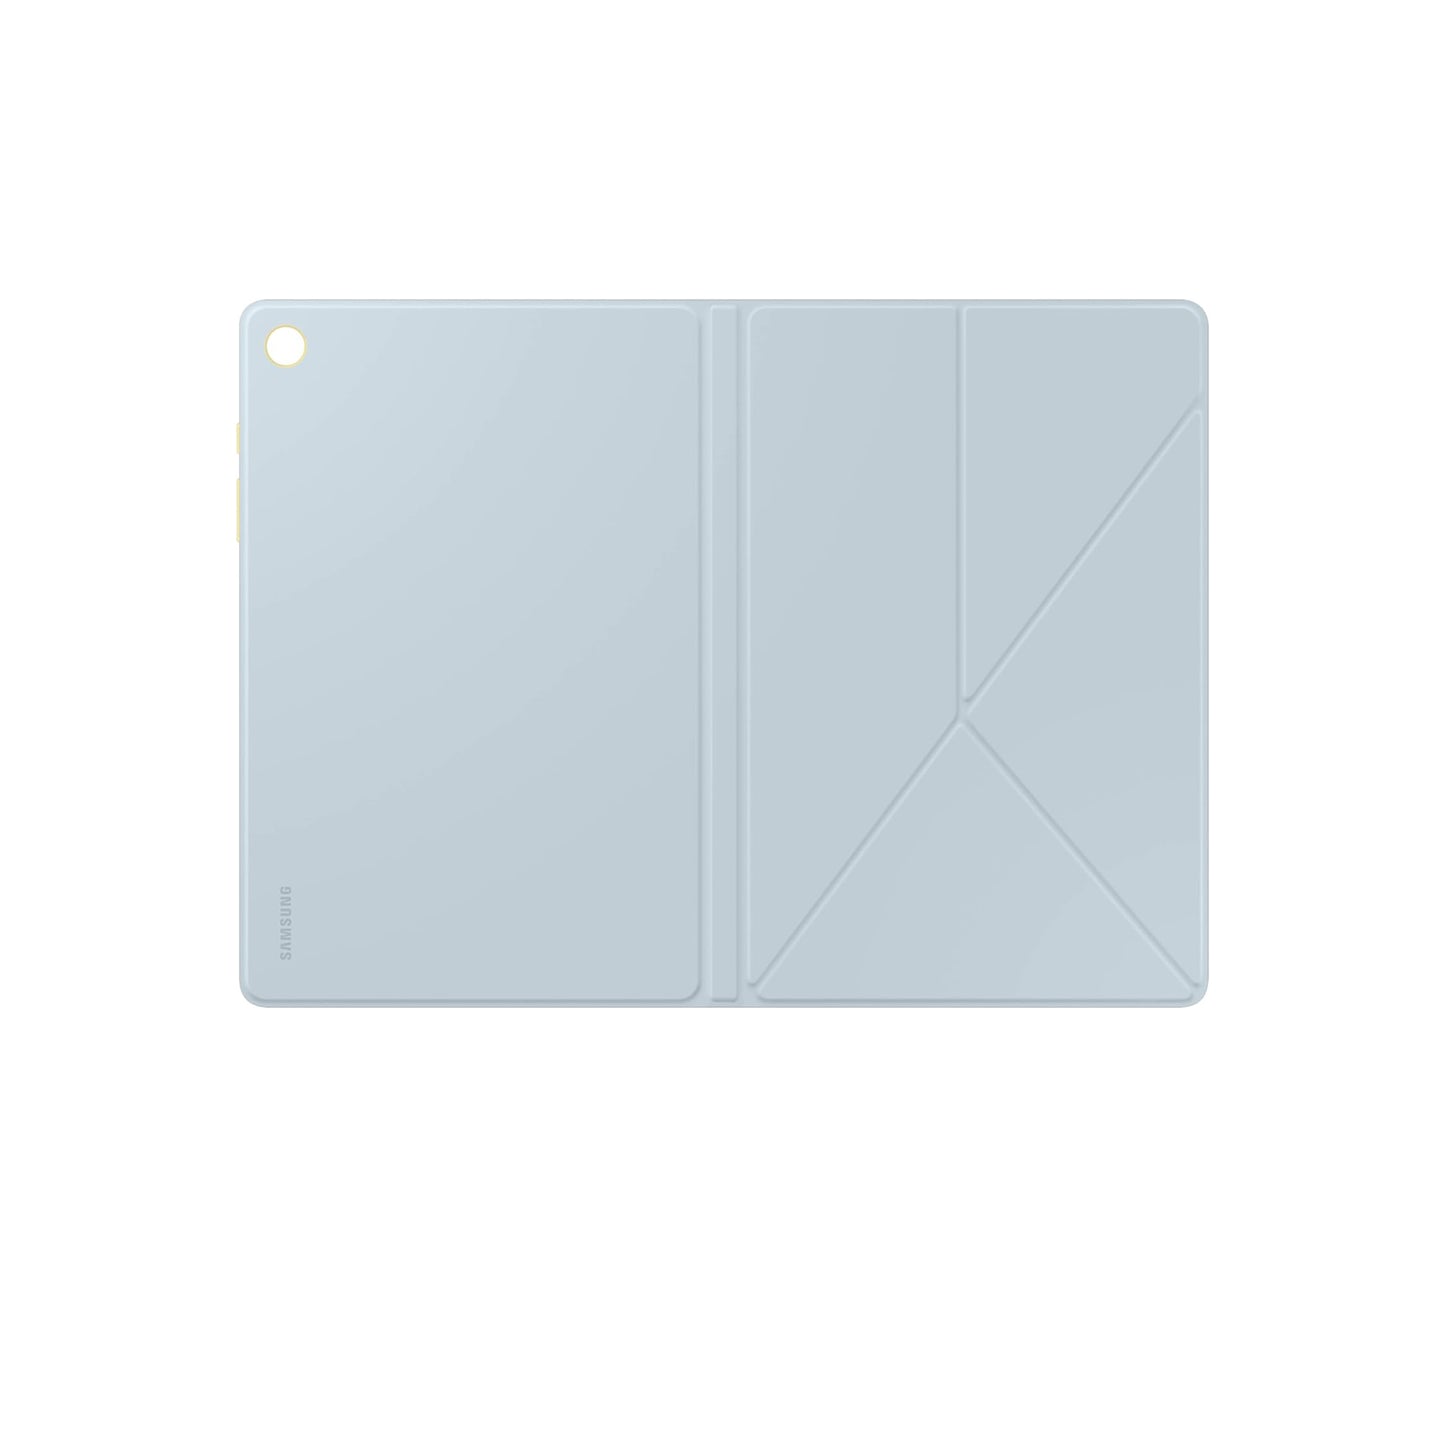 غطاء كتاب SAMSUNG Galaxy Tab A9+، حافظة حماية للكمبيوتر اللوحي، حامل قابل للطي مع أوضاع أفقية وصورة، حماية ضد الصدمات والخدوش، تشغيل/إيقاف الشاشة تلقائيًا، إصدار الولايات المتحدة، أزرق 